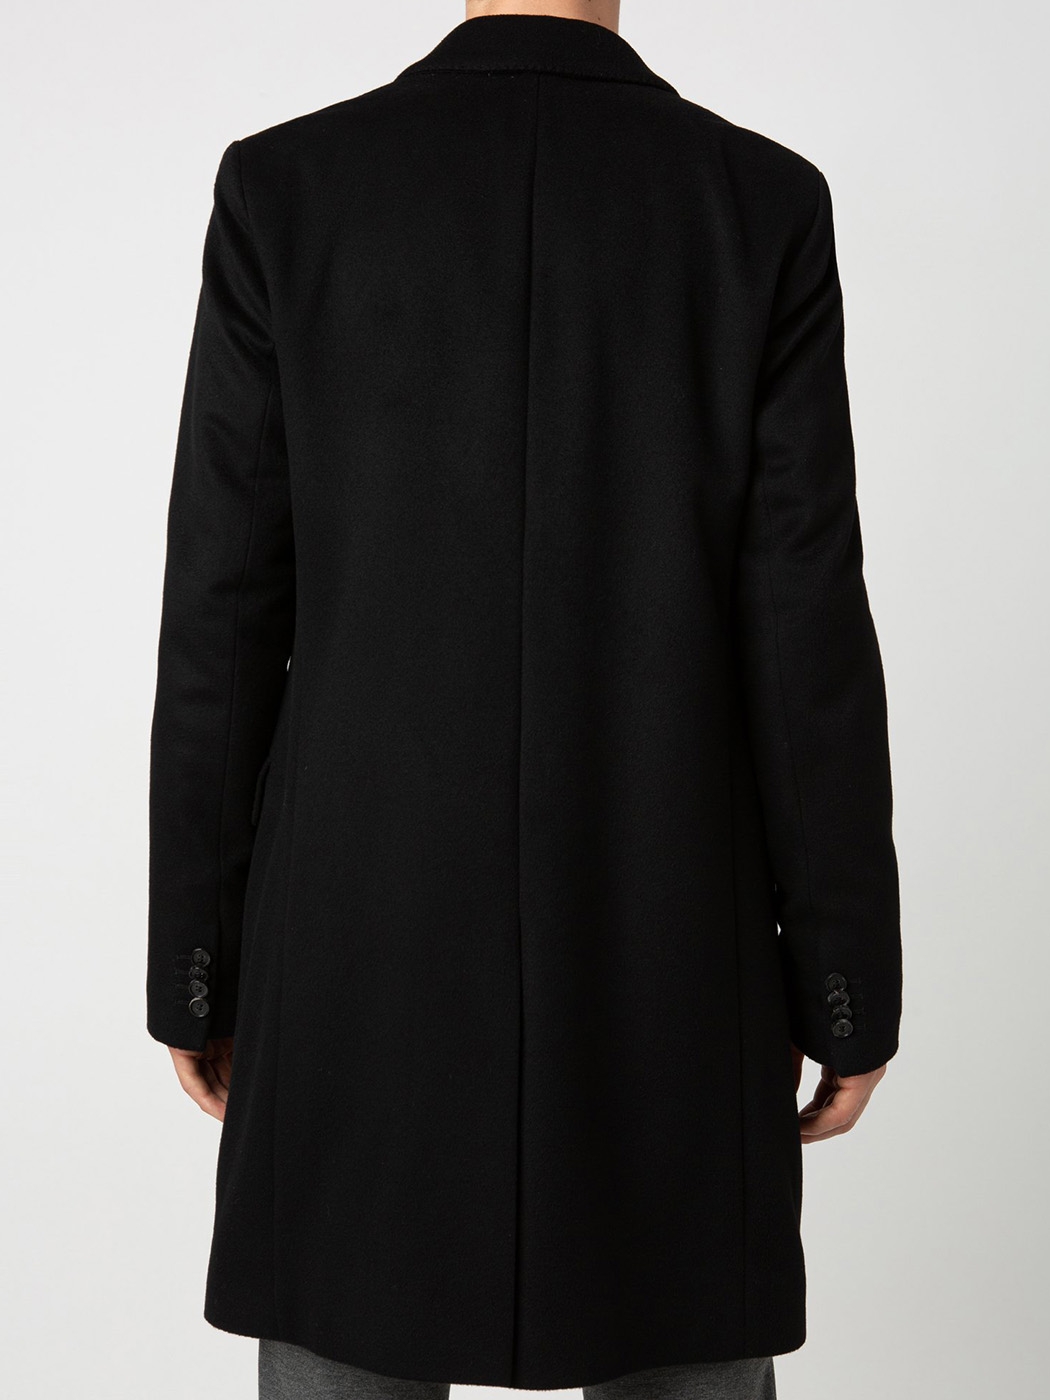 Vakantie bemanning Wijde selectie Boutique HUGO BOSS MIGOR Men's black cashmere wool long coat Retail price  €750 Size 48 (M)